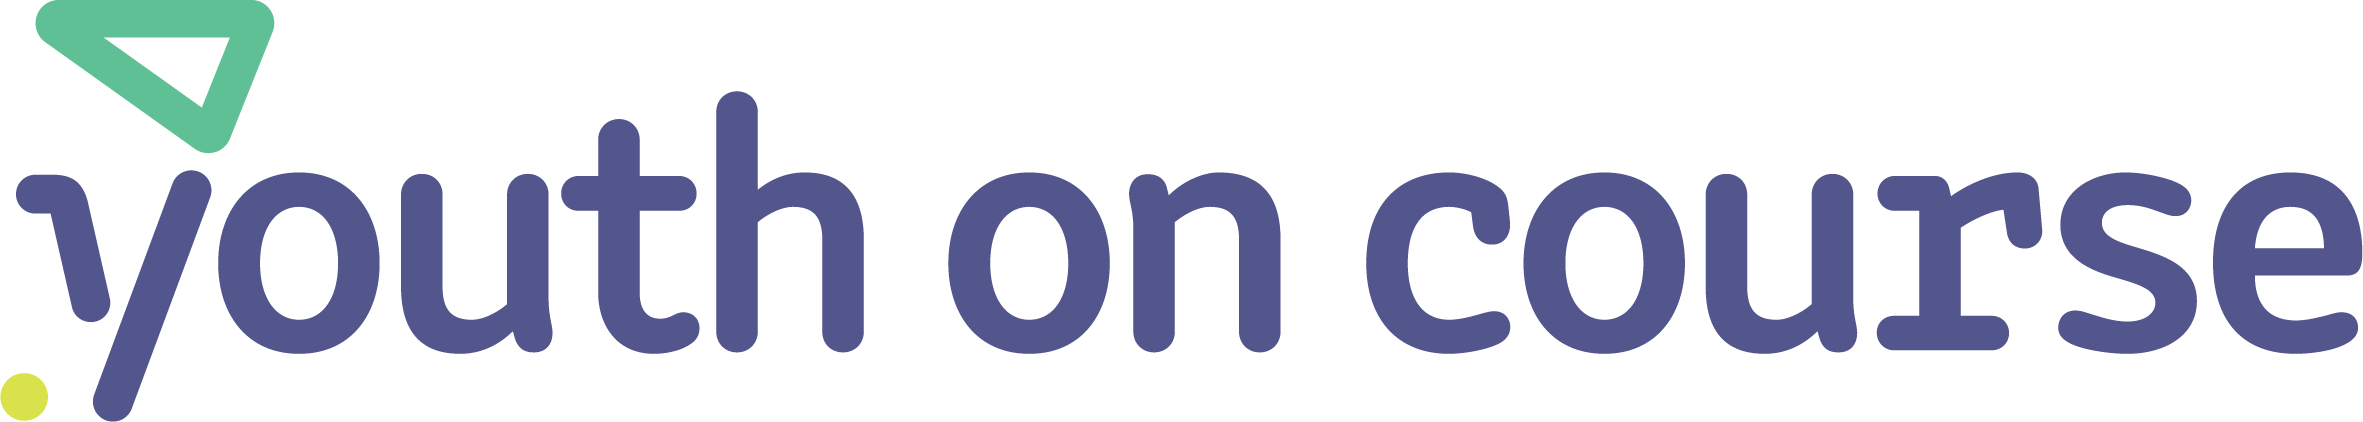 youthoncourse.org logo